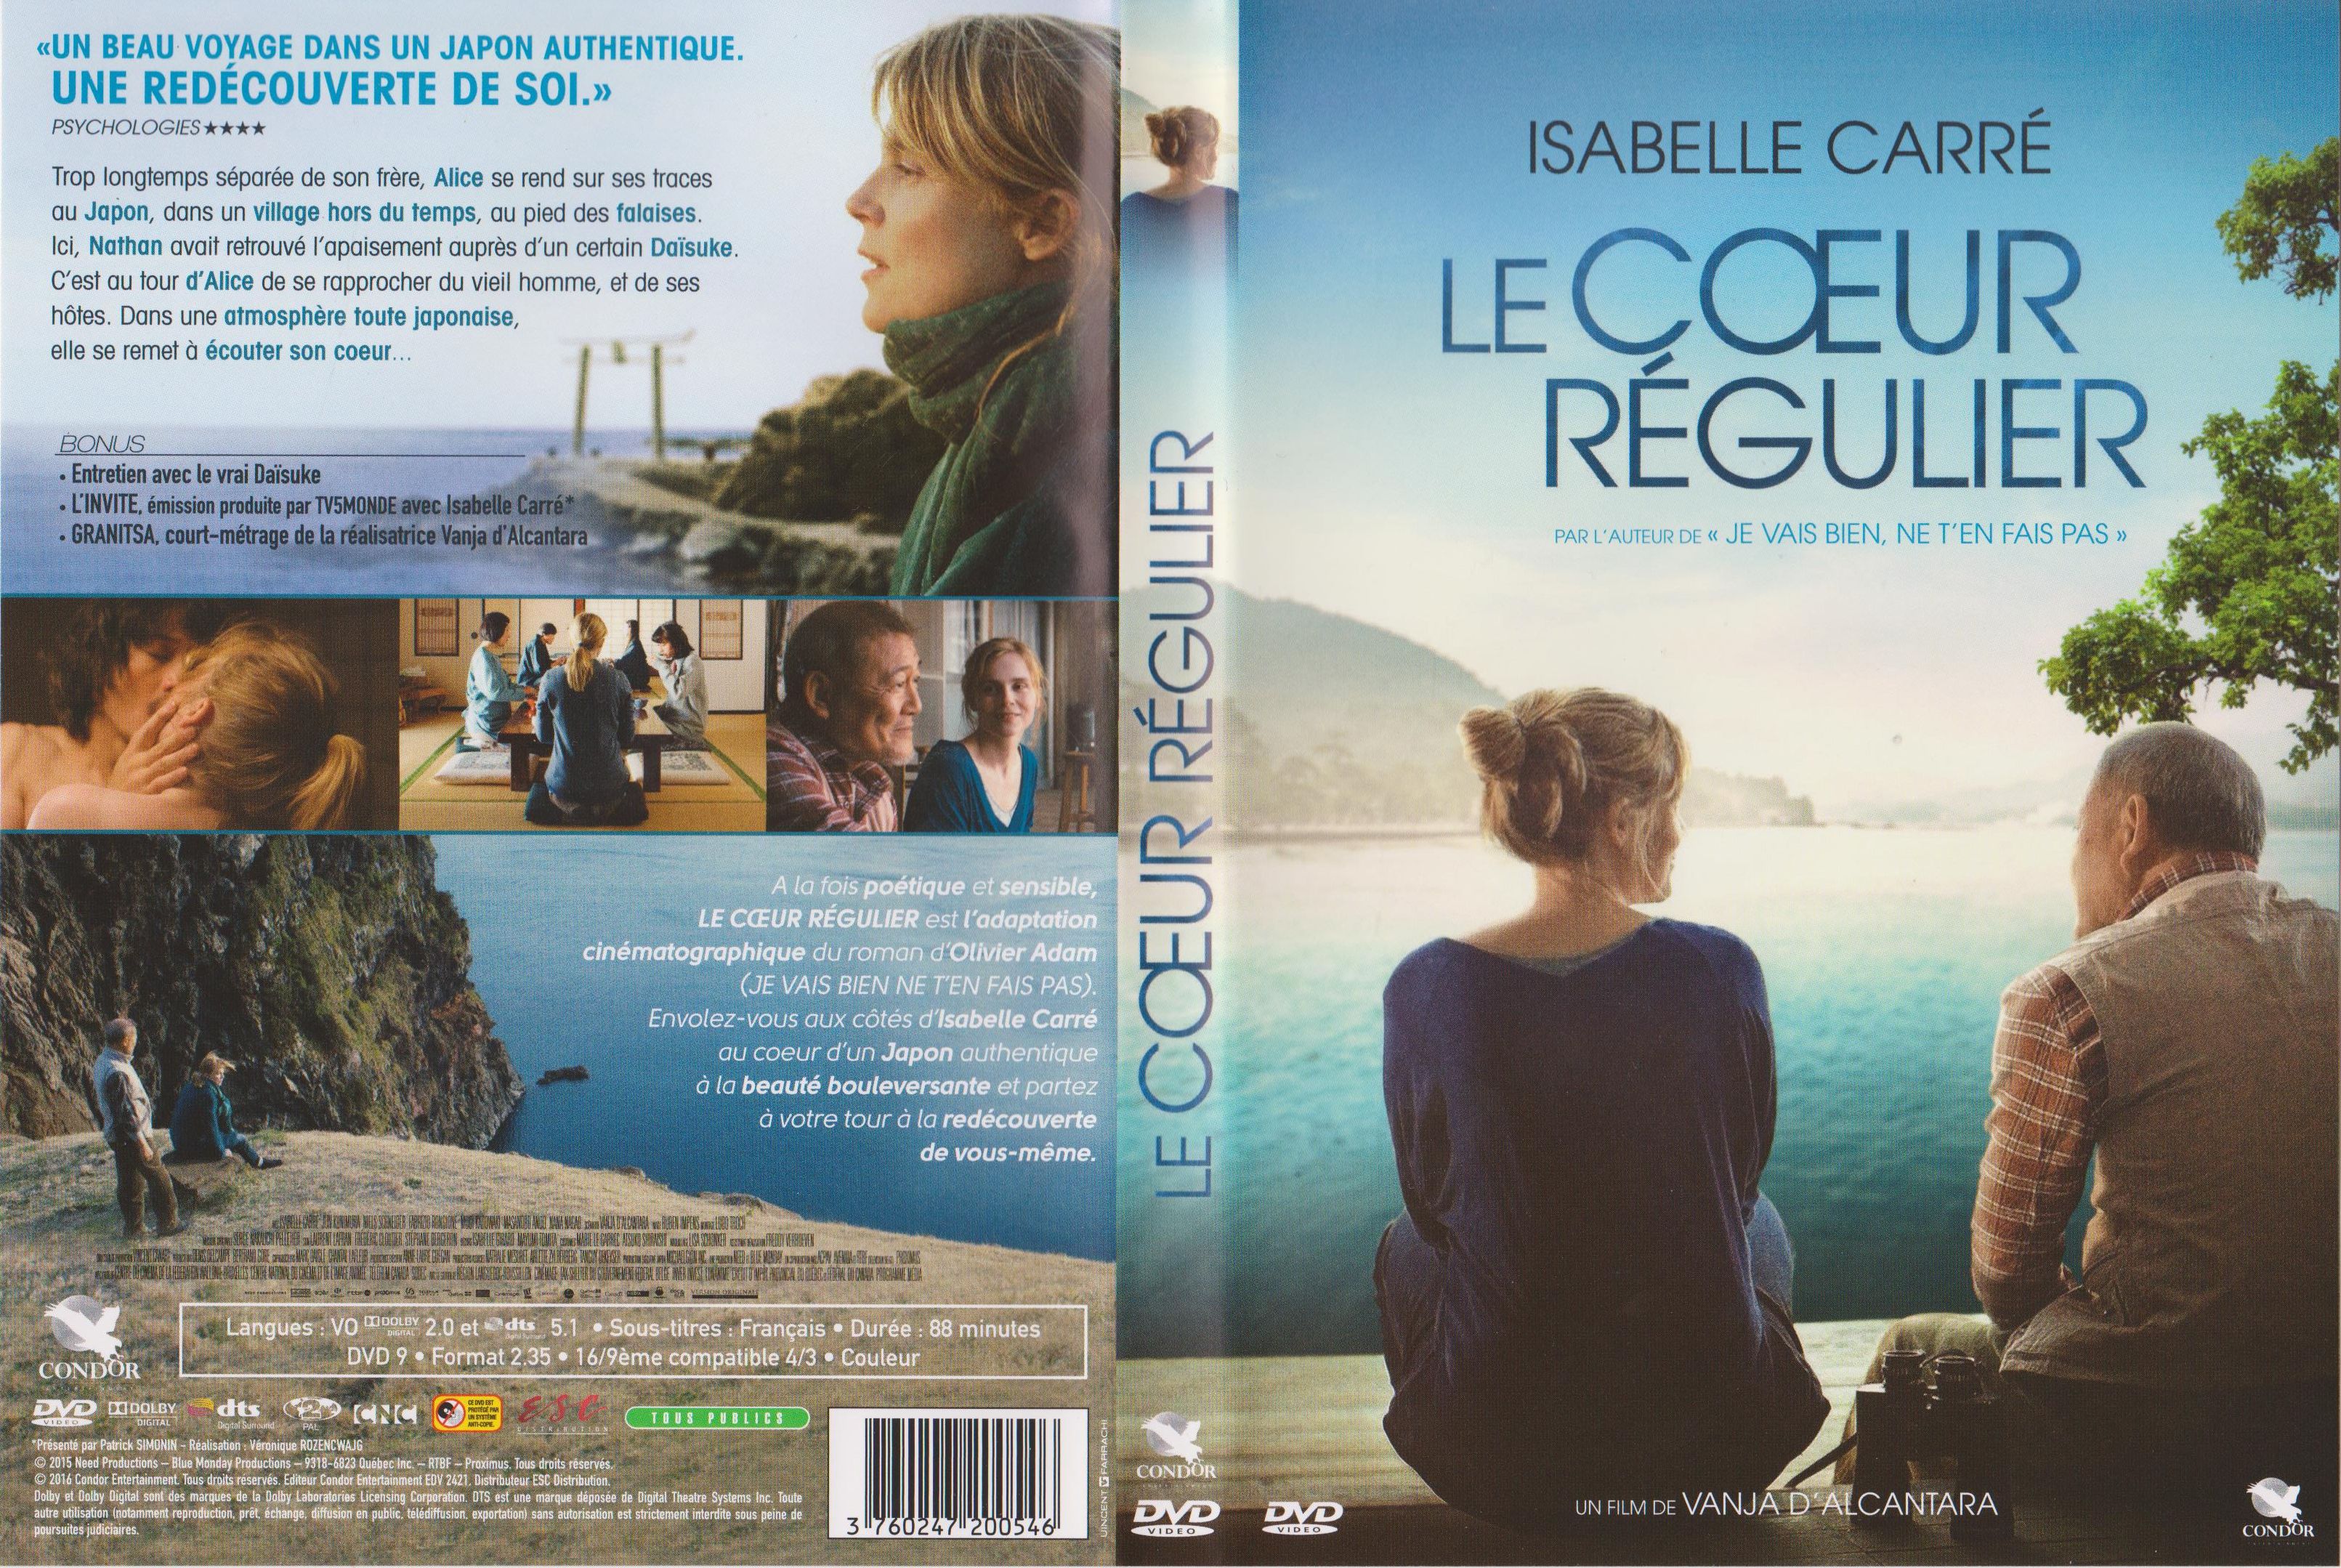 Jaquette DVD Le coeur rgulier